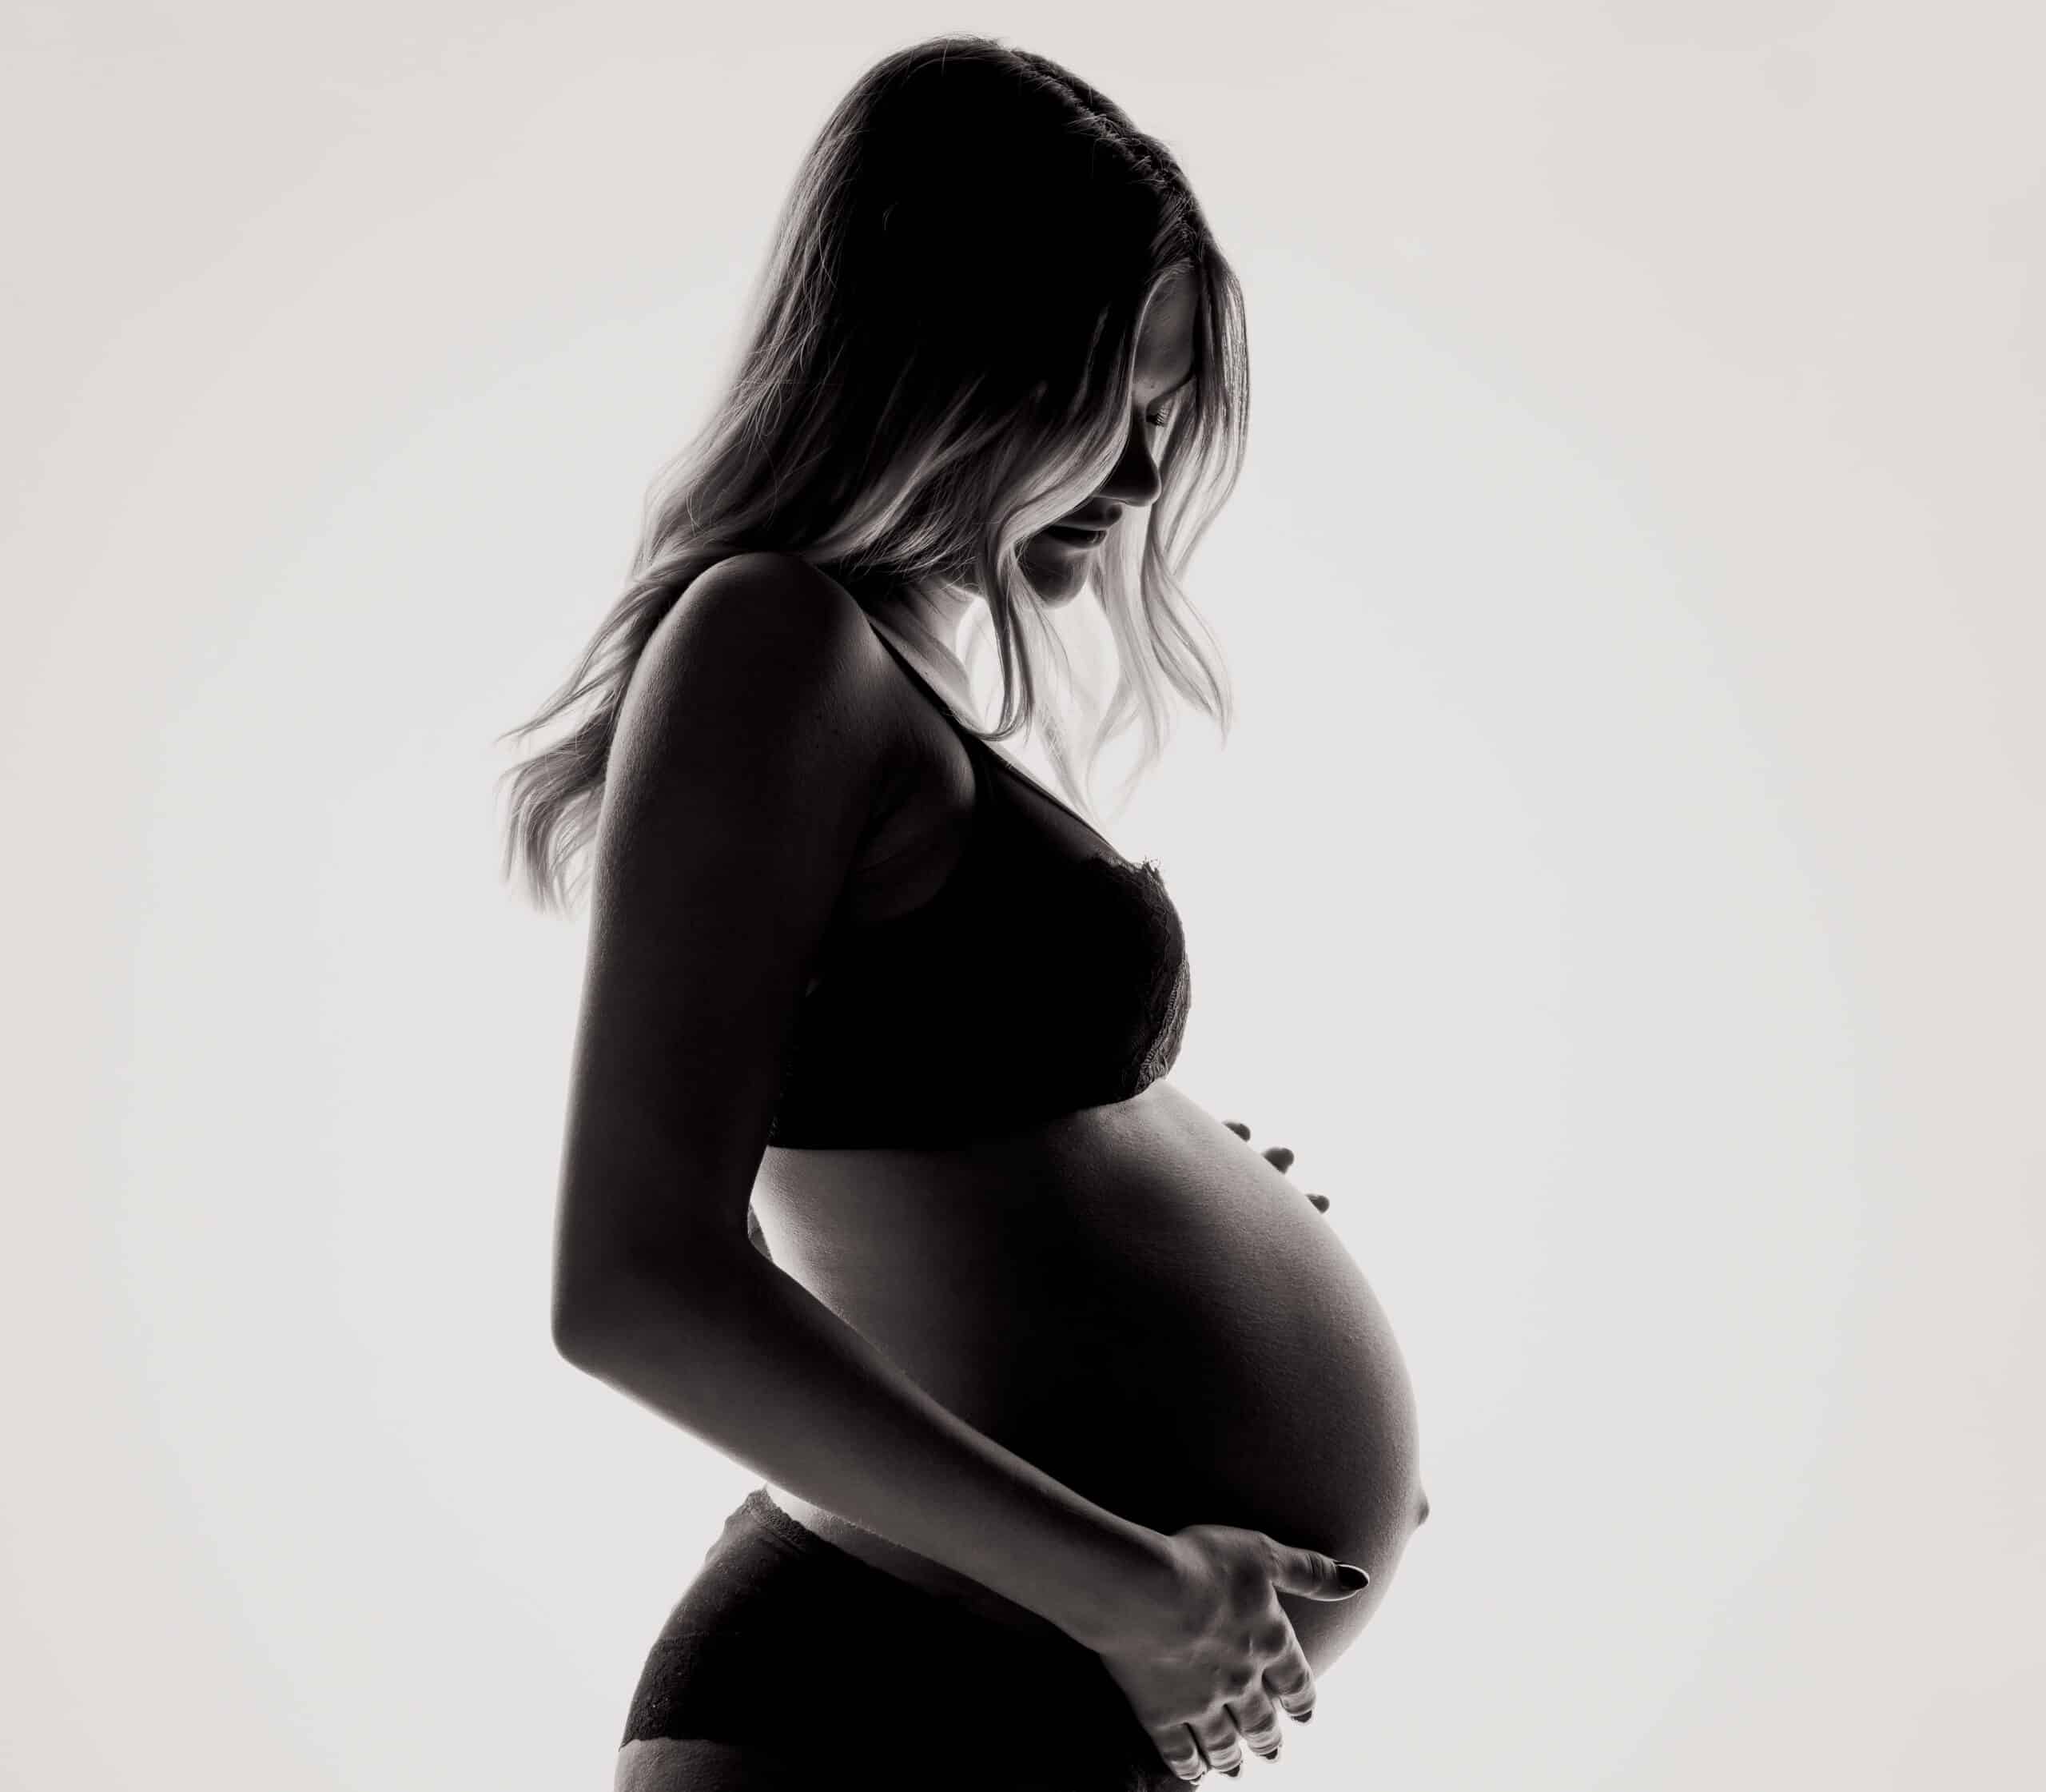 A ascultat sfaturile de pe un grup de mamici si a nascut un copil mort la aproape 45 de saptamani de sarcina | Demamici.ro